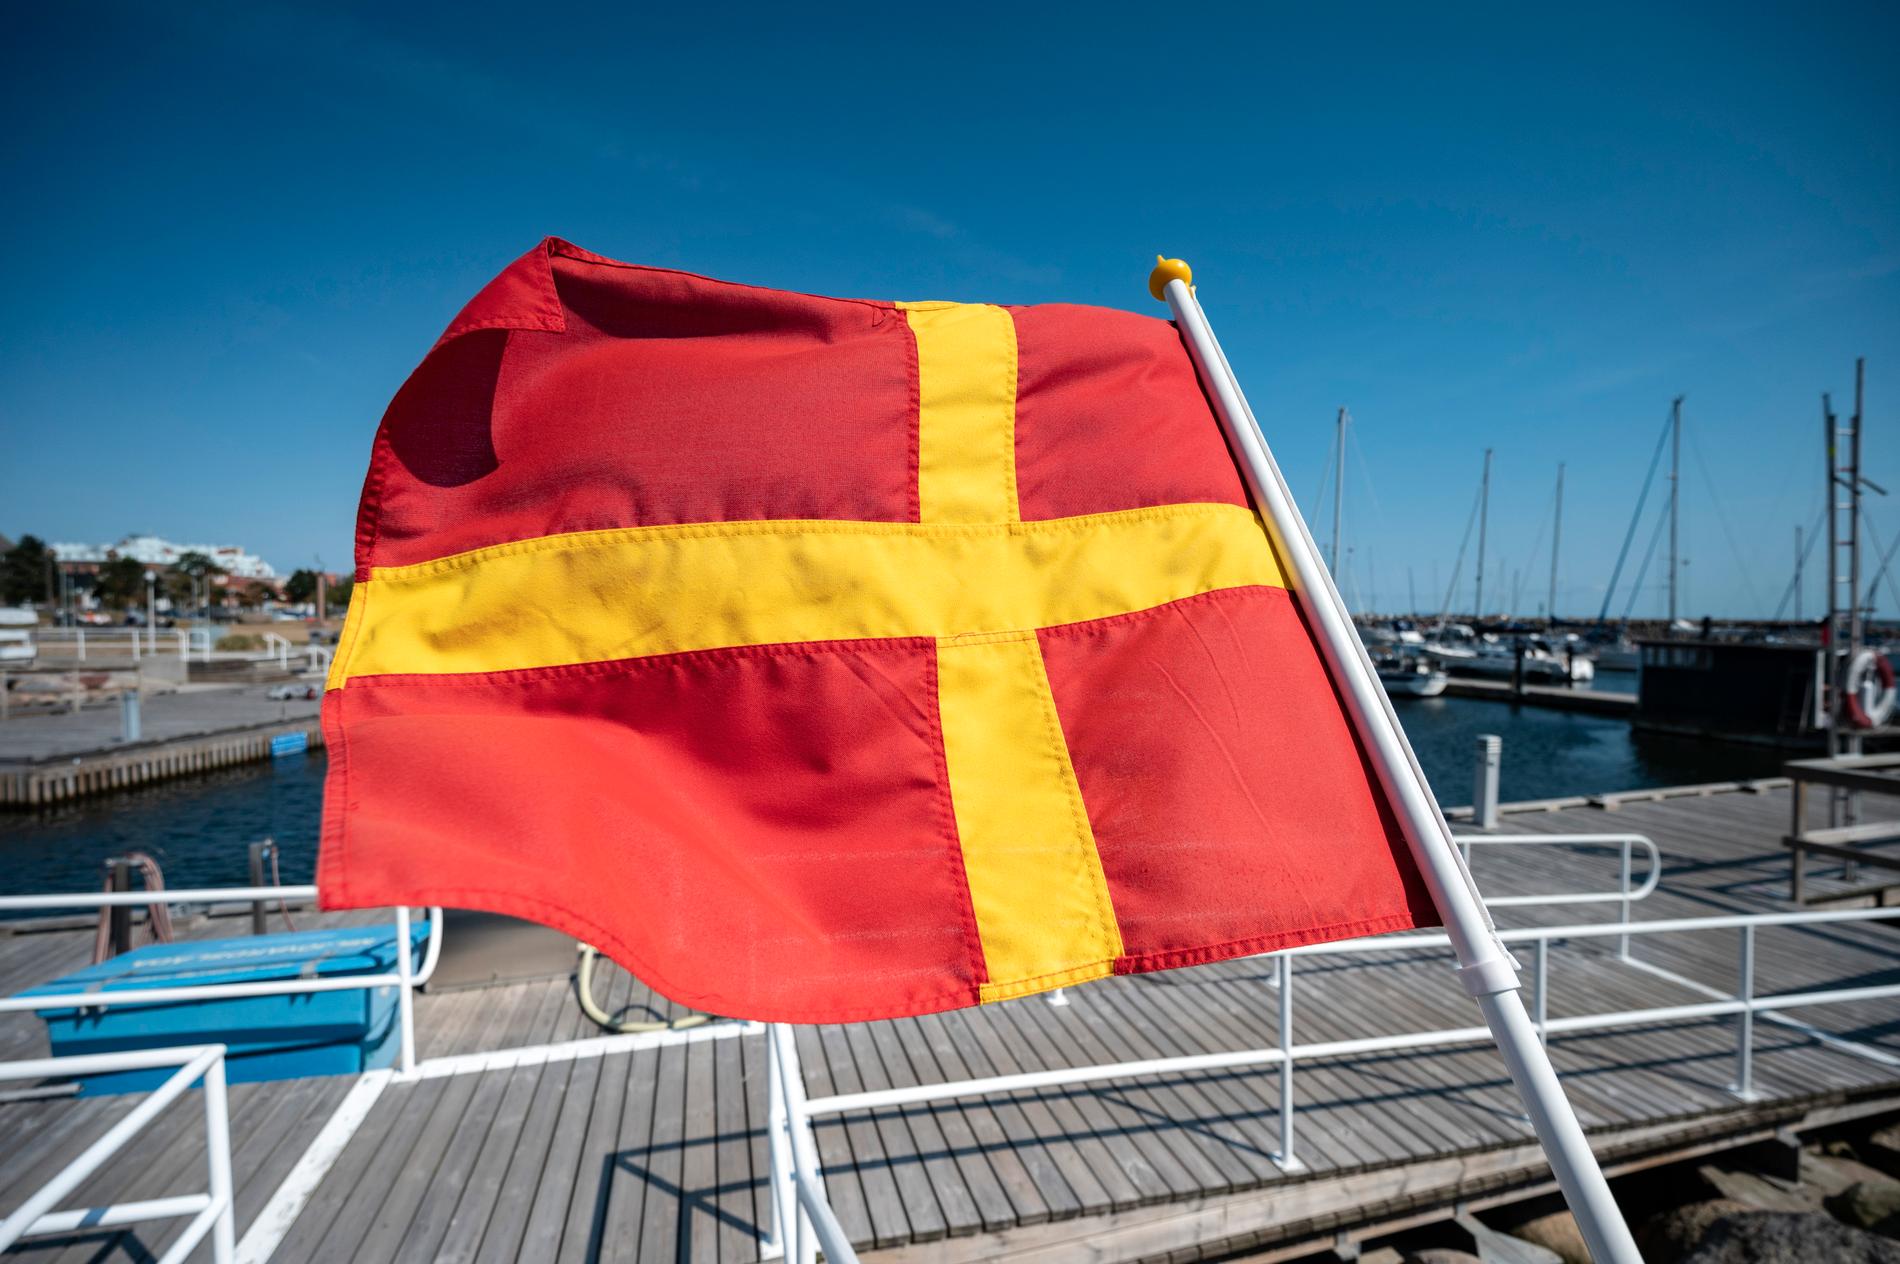 För stockholmare verkar den här flaggan vara symbolen för ett sagoland i fjärran.